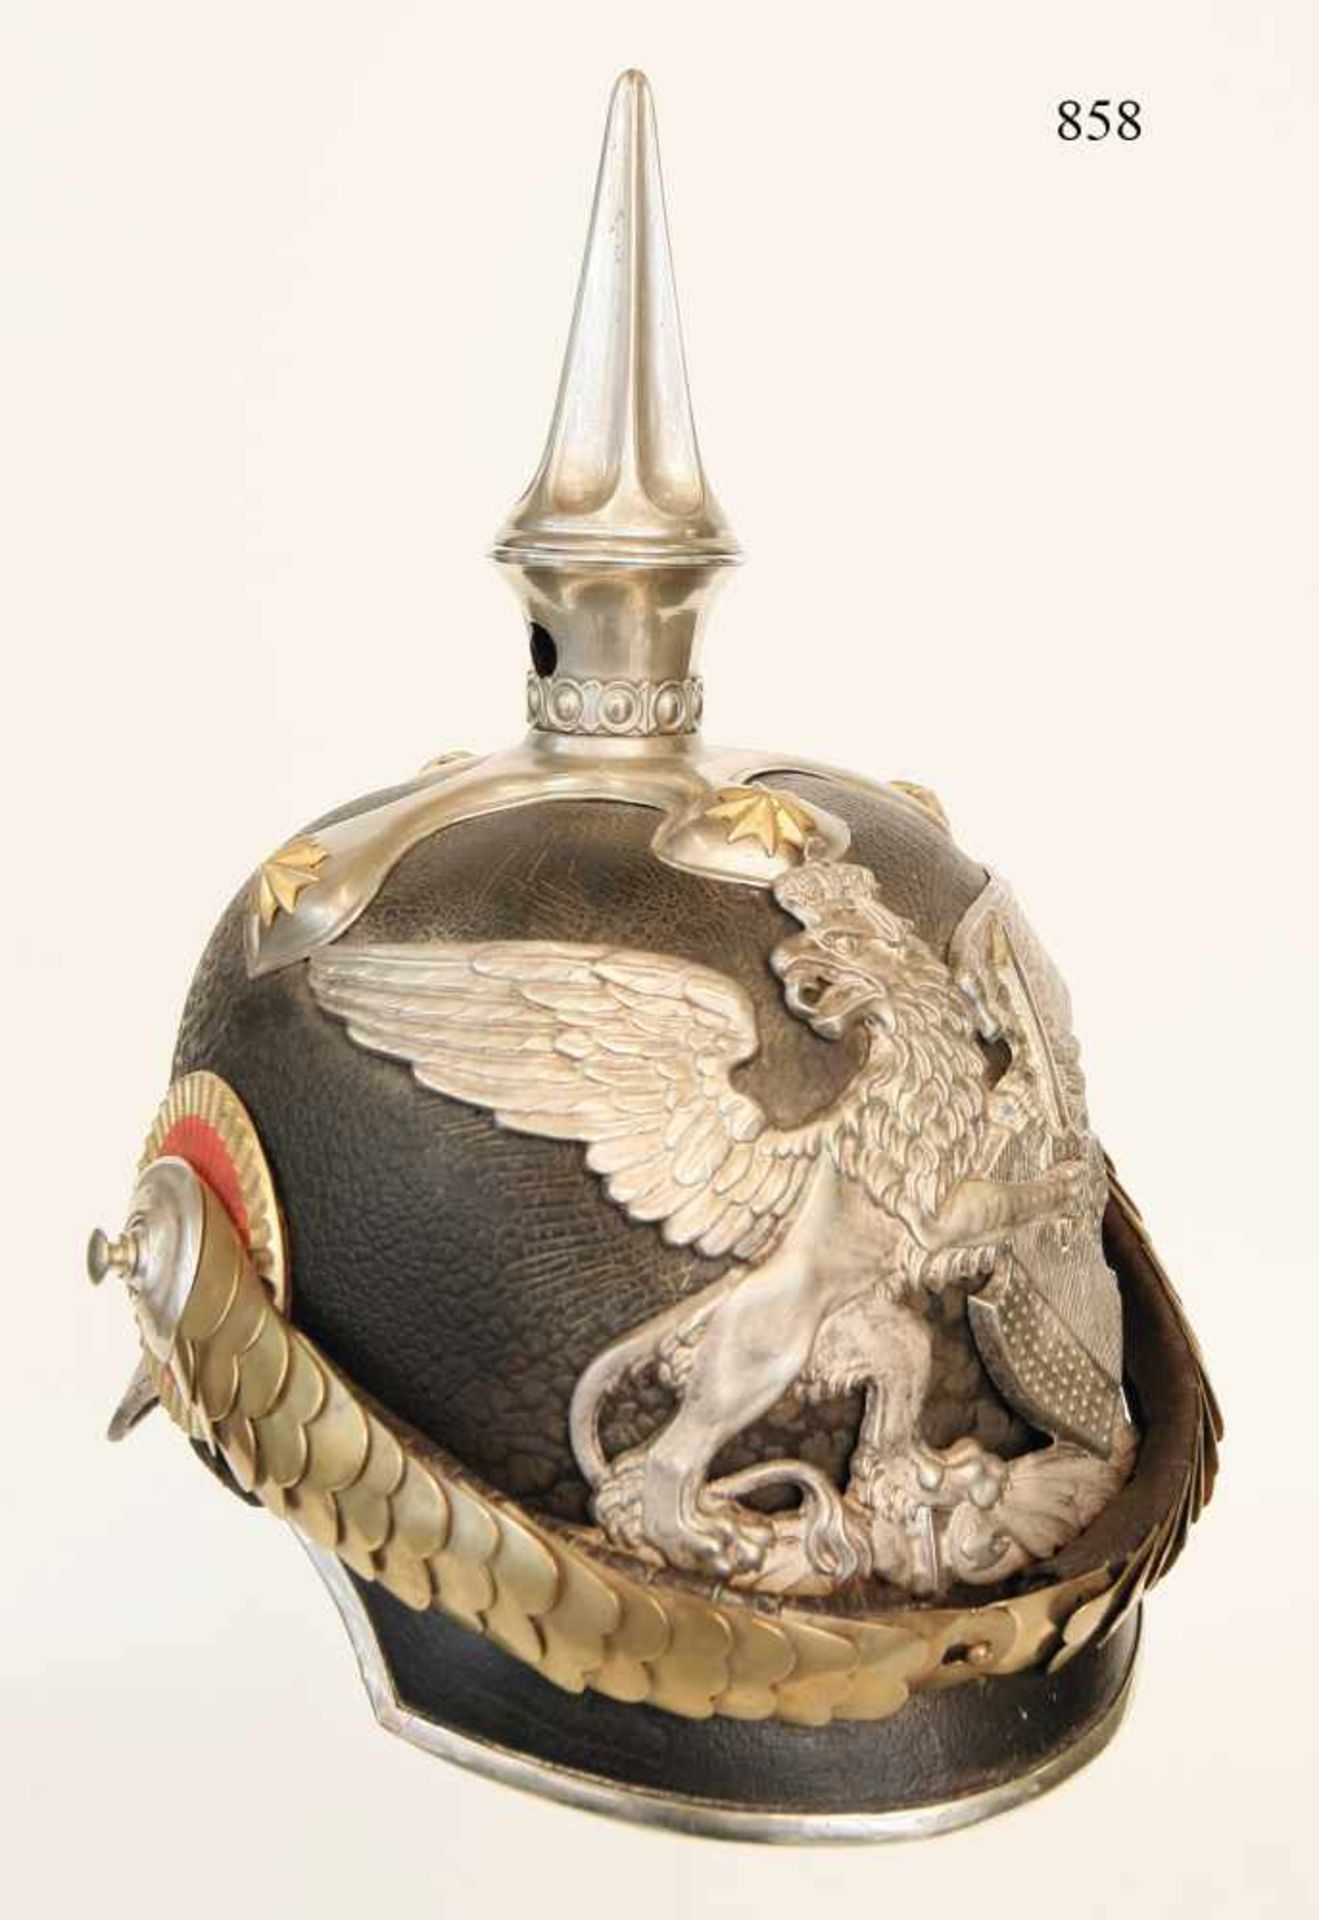 Helm für Generale, M/1850Hohe Lederglocke mit versilberten Beschlägen. Schöner, hochreliefierter